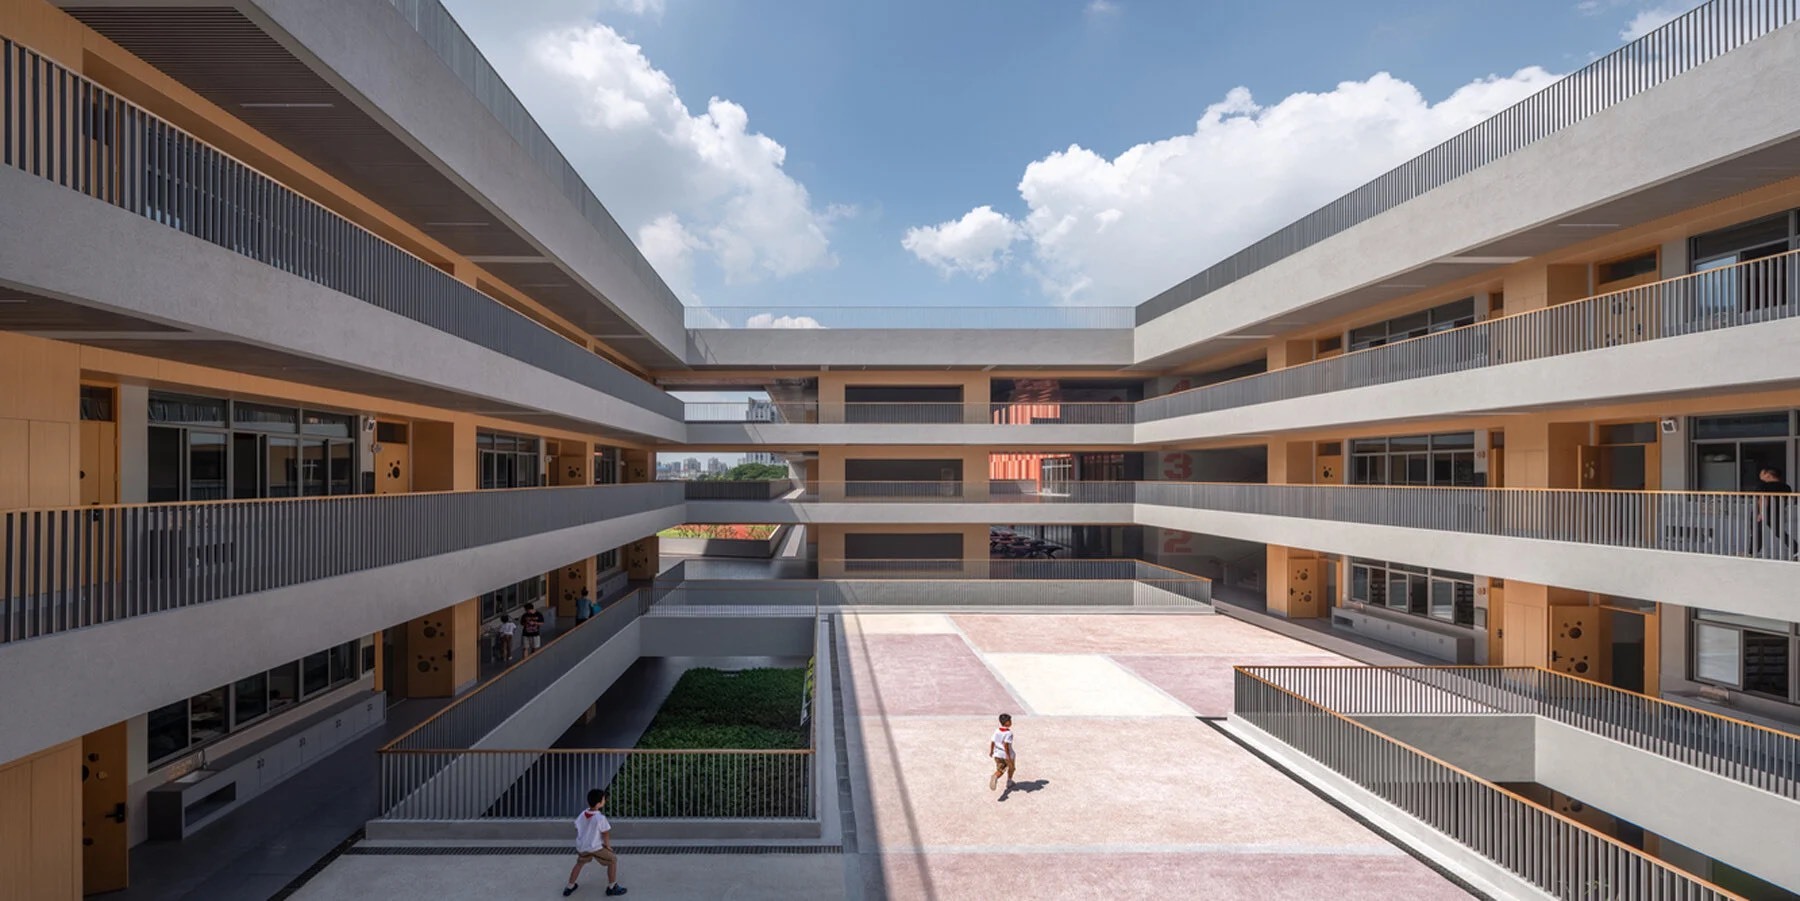 شکل جالب یک مدرسه ابتدایی در چین (+تصاویر)